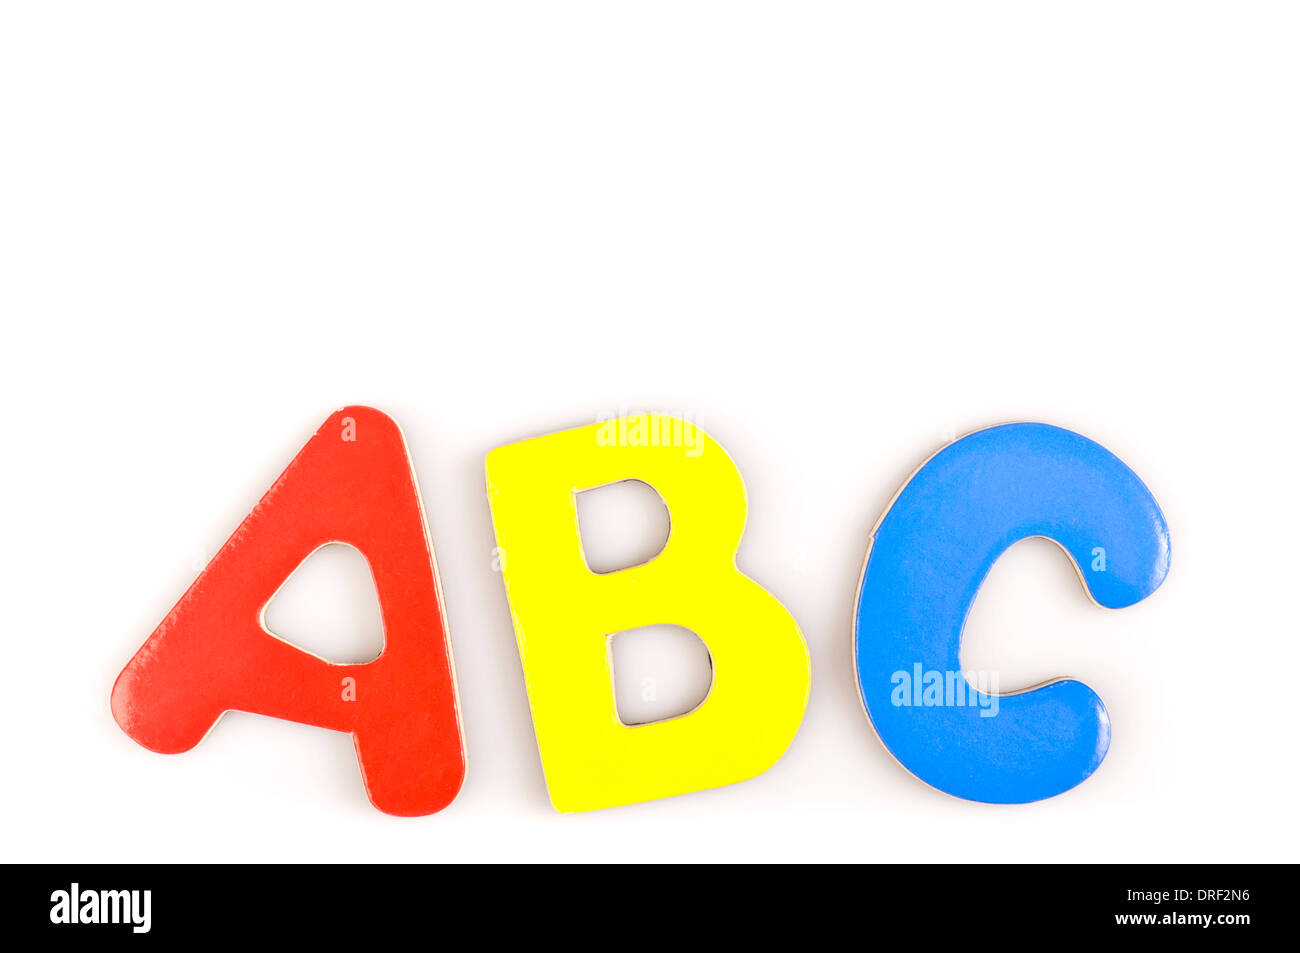 幼儿学习卡通字母ABC图片壁纸幼儿学习卡通字母ABC图片壁纸图片_桌面壁纸图片_壁纸下载-元气壁纸